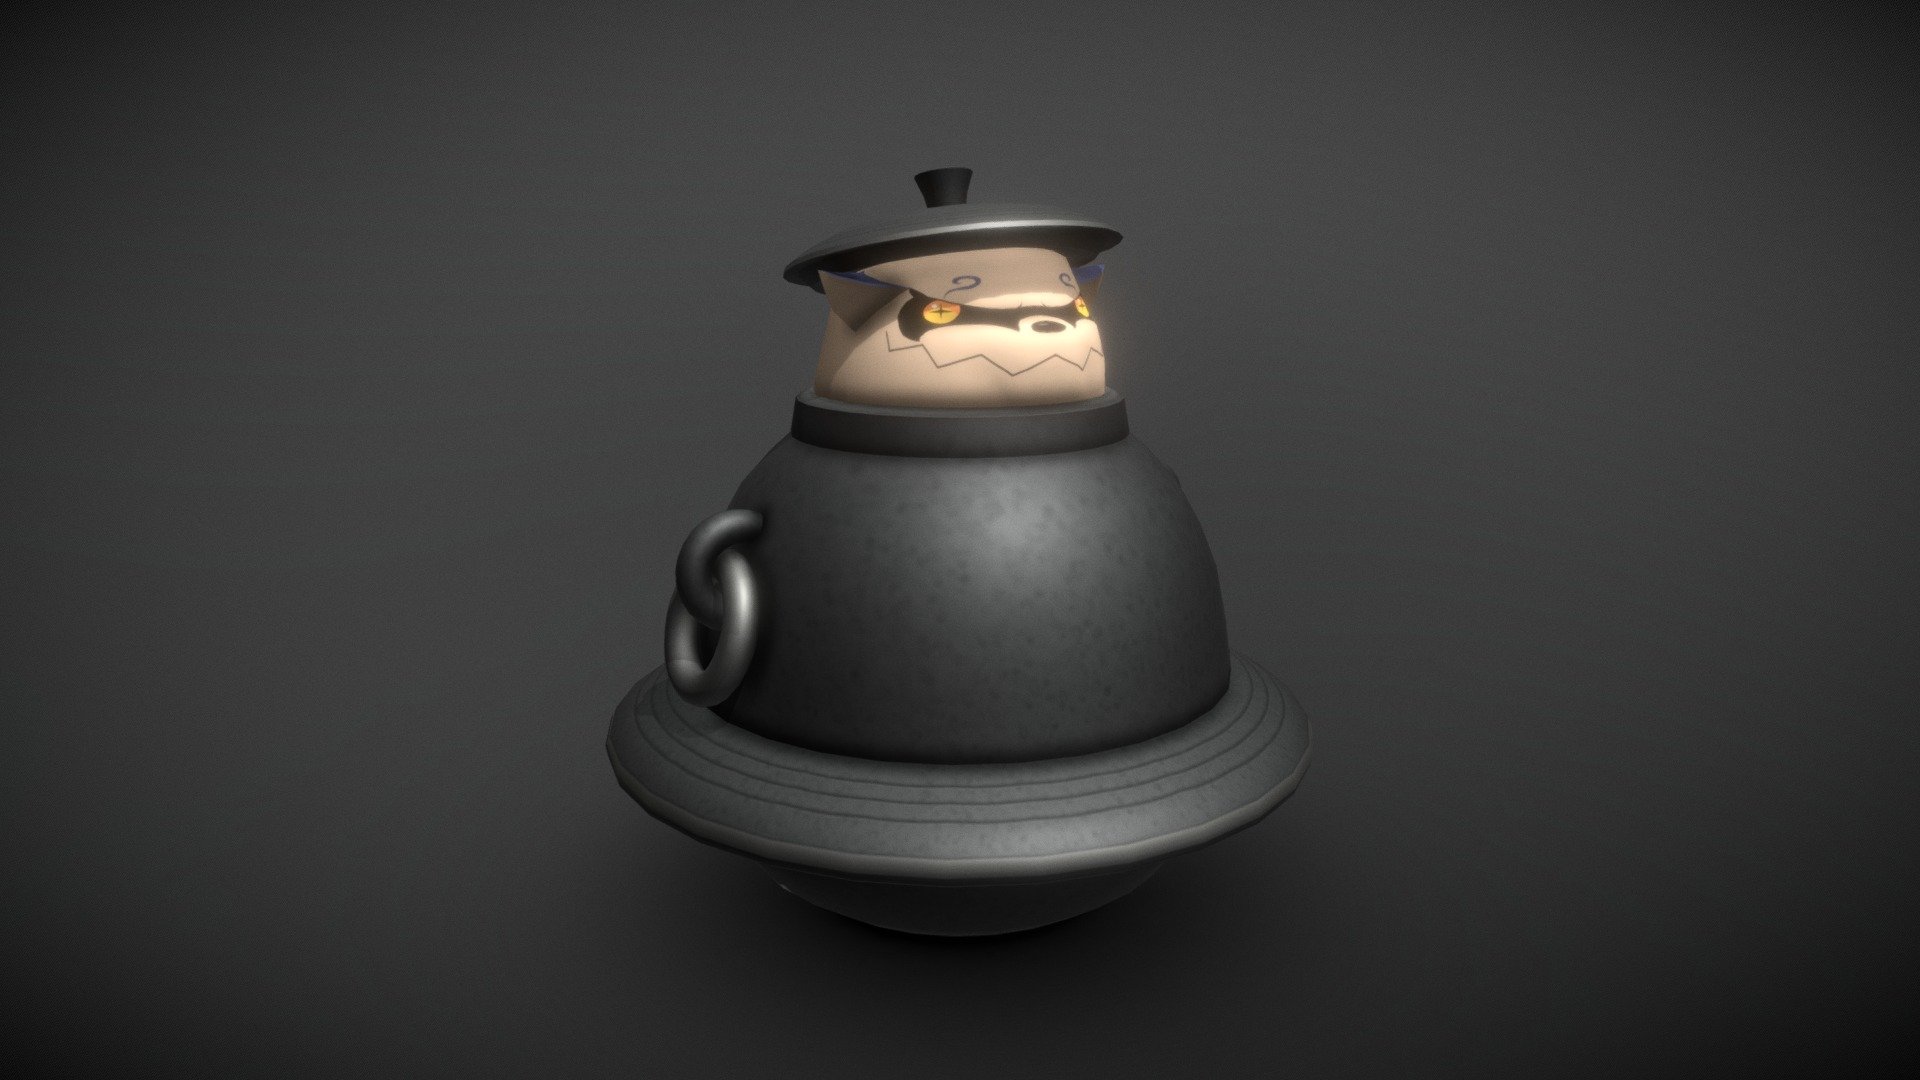 Shukaku in the teapot